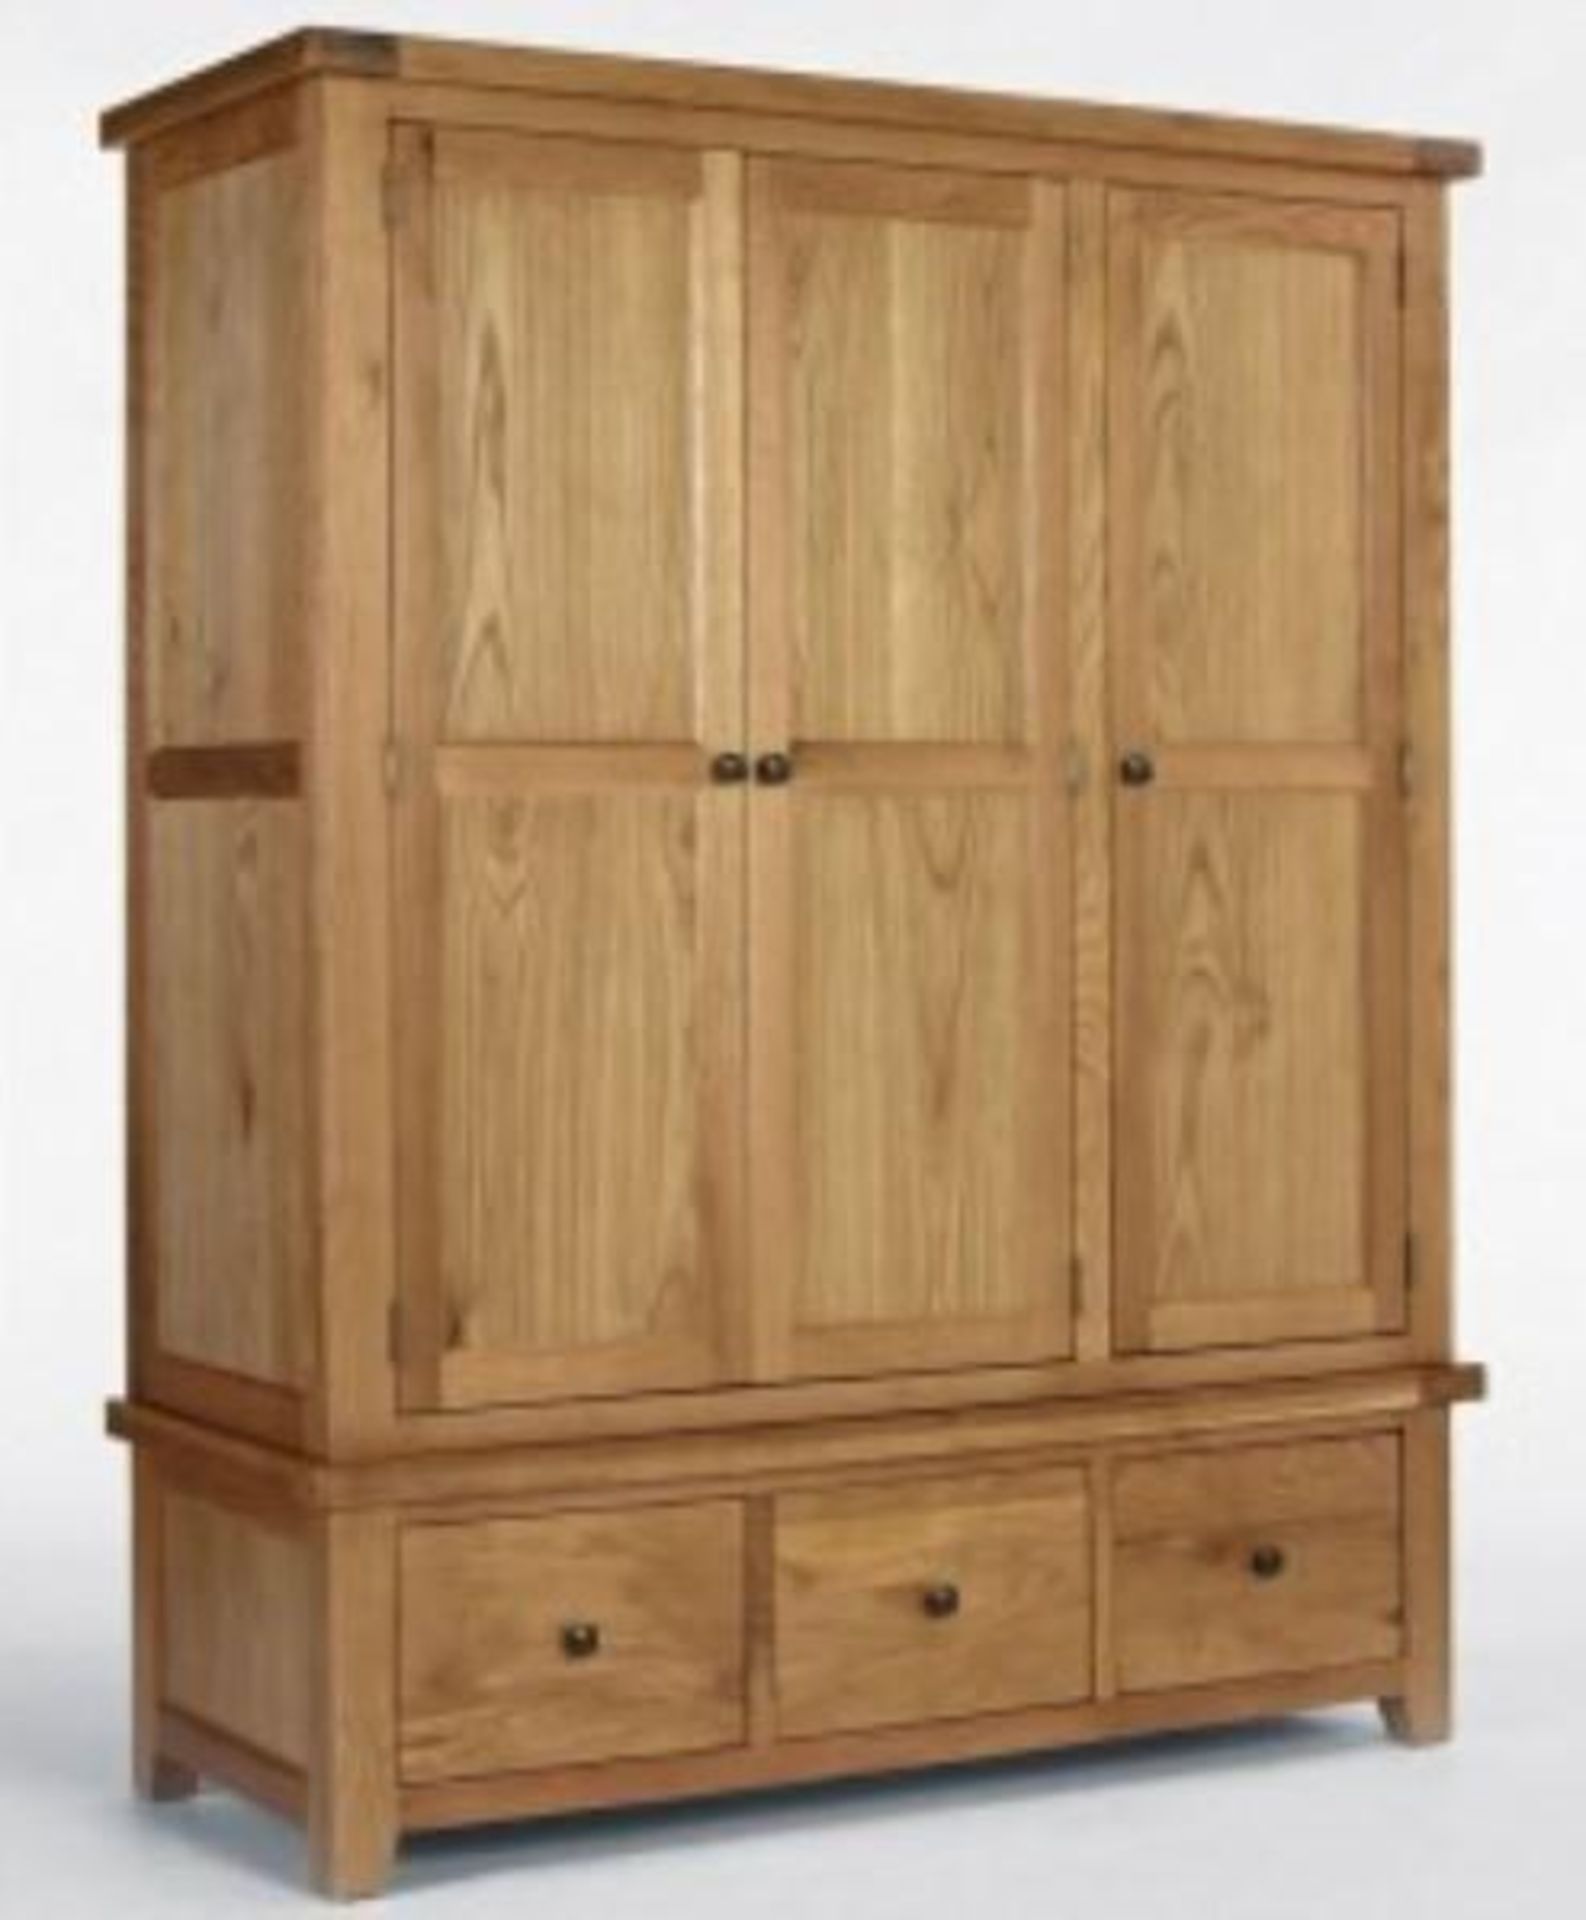 BRAND NEW & BOXED Devon oak triple robe 3 door